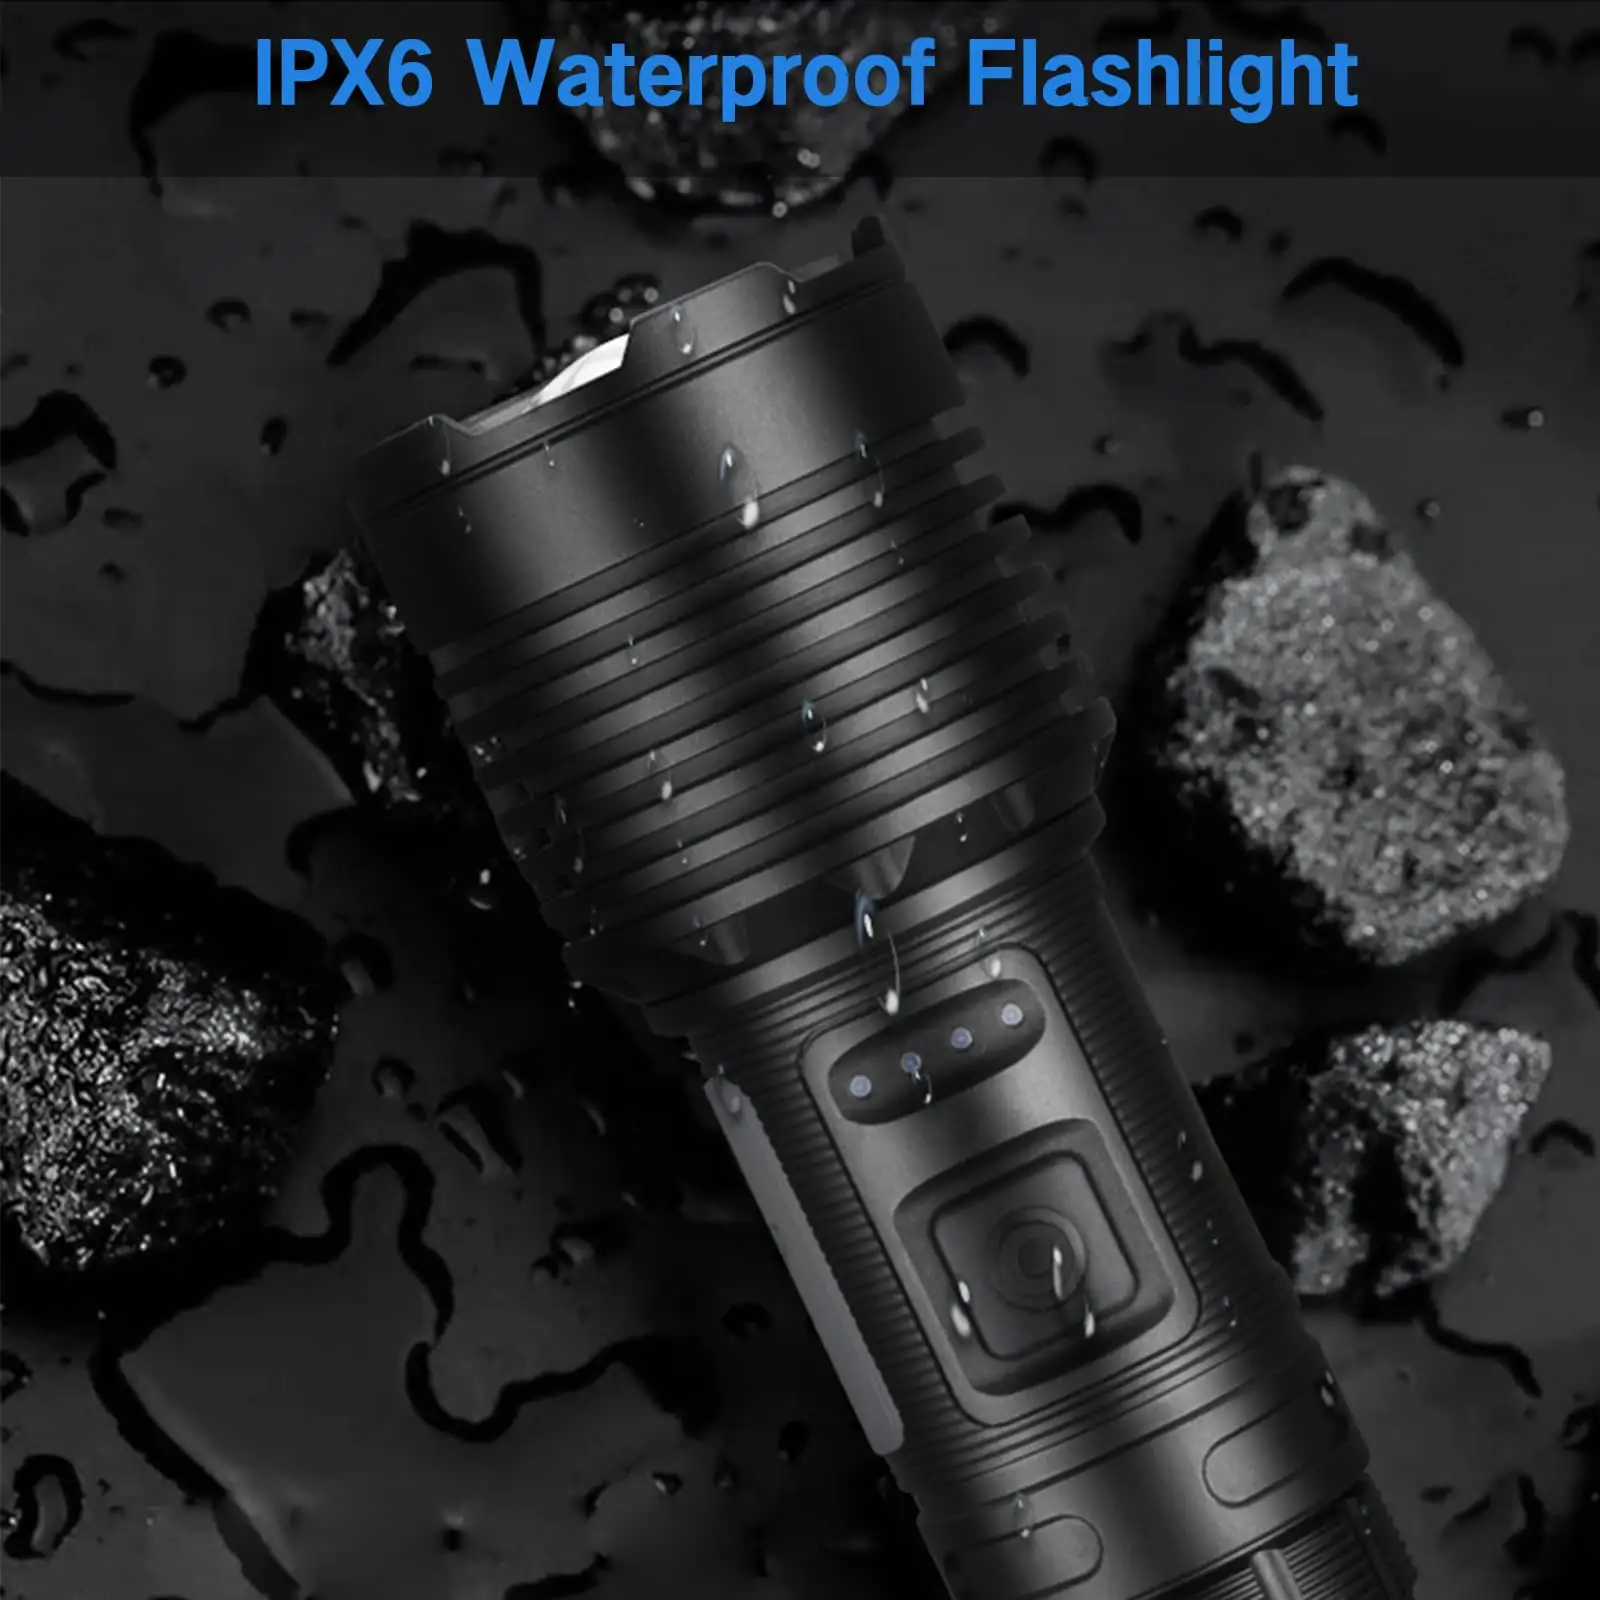 starke XHP50 zoom hohe leistung taschenlampe licht led-taschenlampe große reichweite leistungsstark super hell leistungsstark wiederaufladbare led-taschenlampe